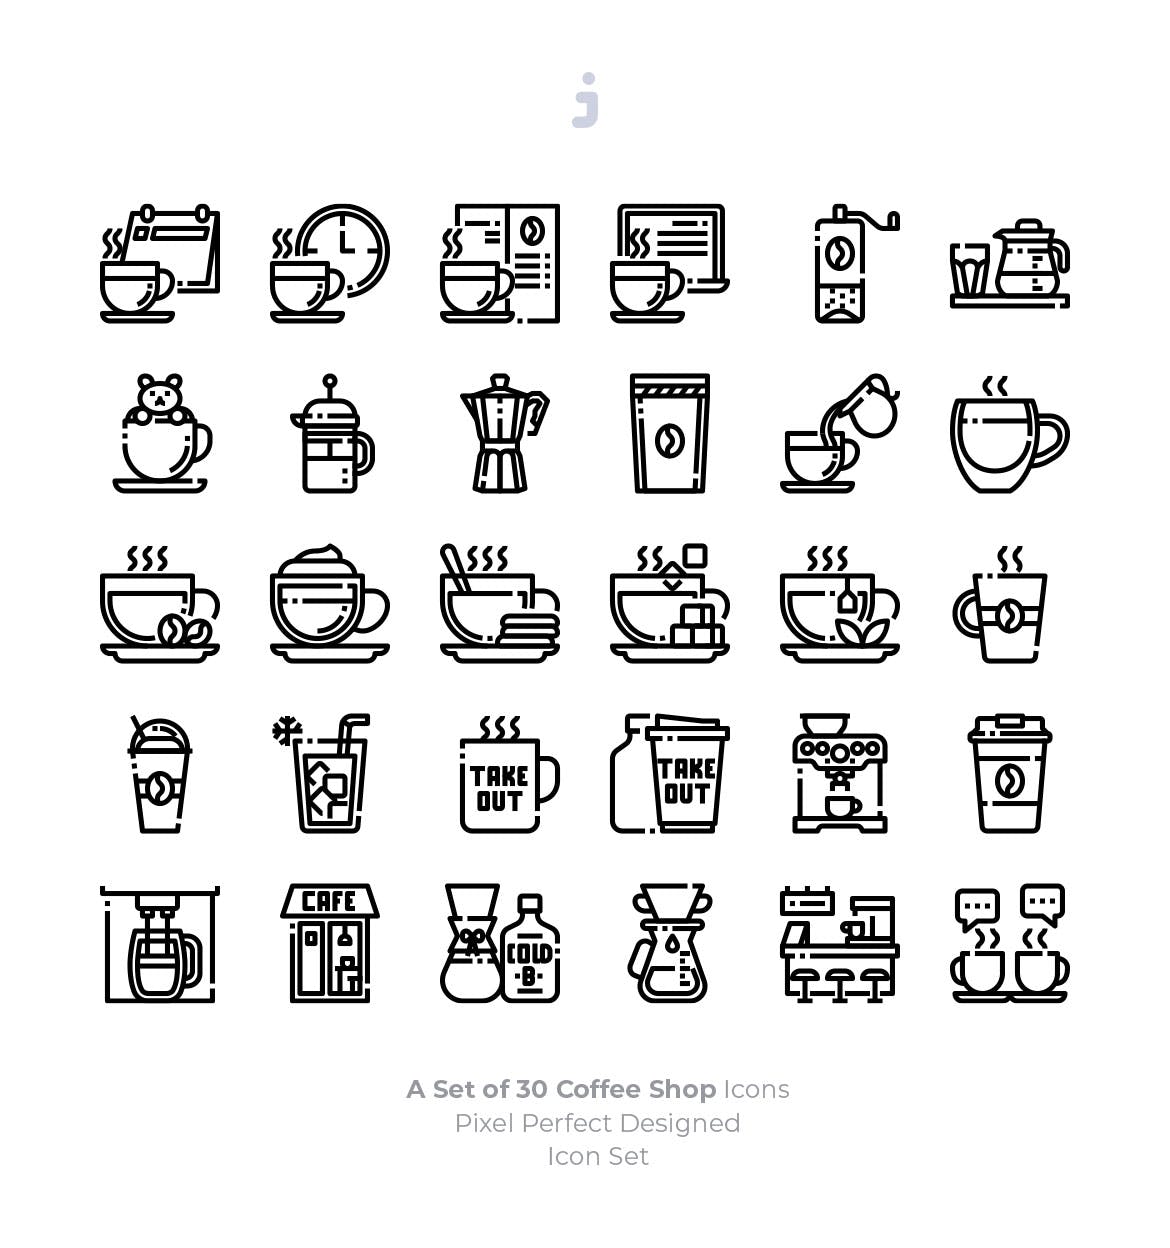 30枚咖啡/咖啡店矢量蚂蚁素材精选图标素材 30 Coffee Shop Icons插图(2)